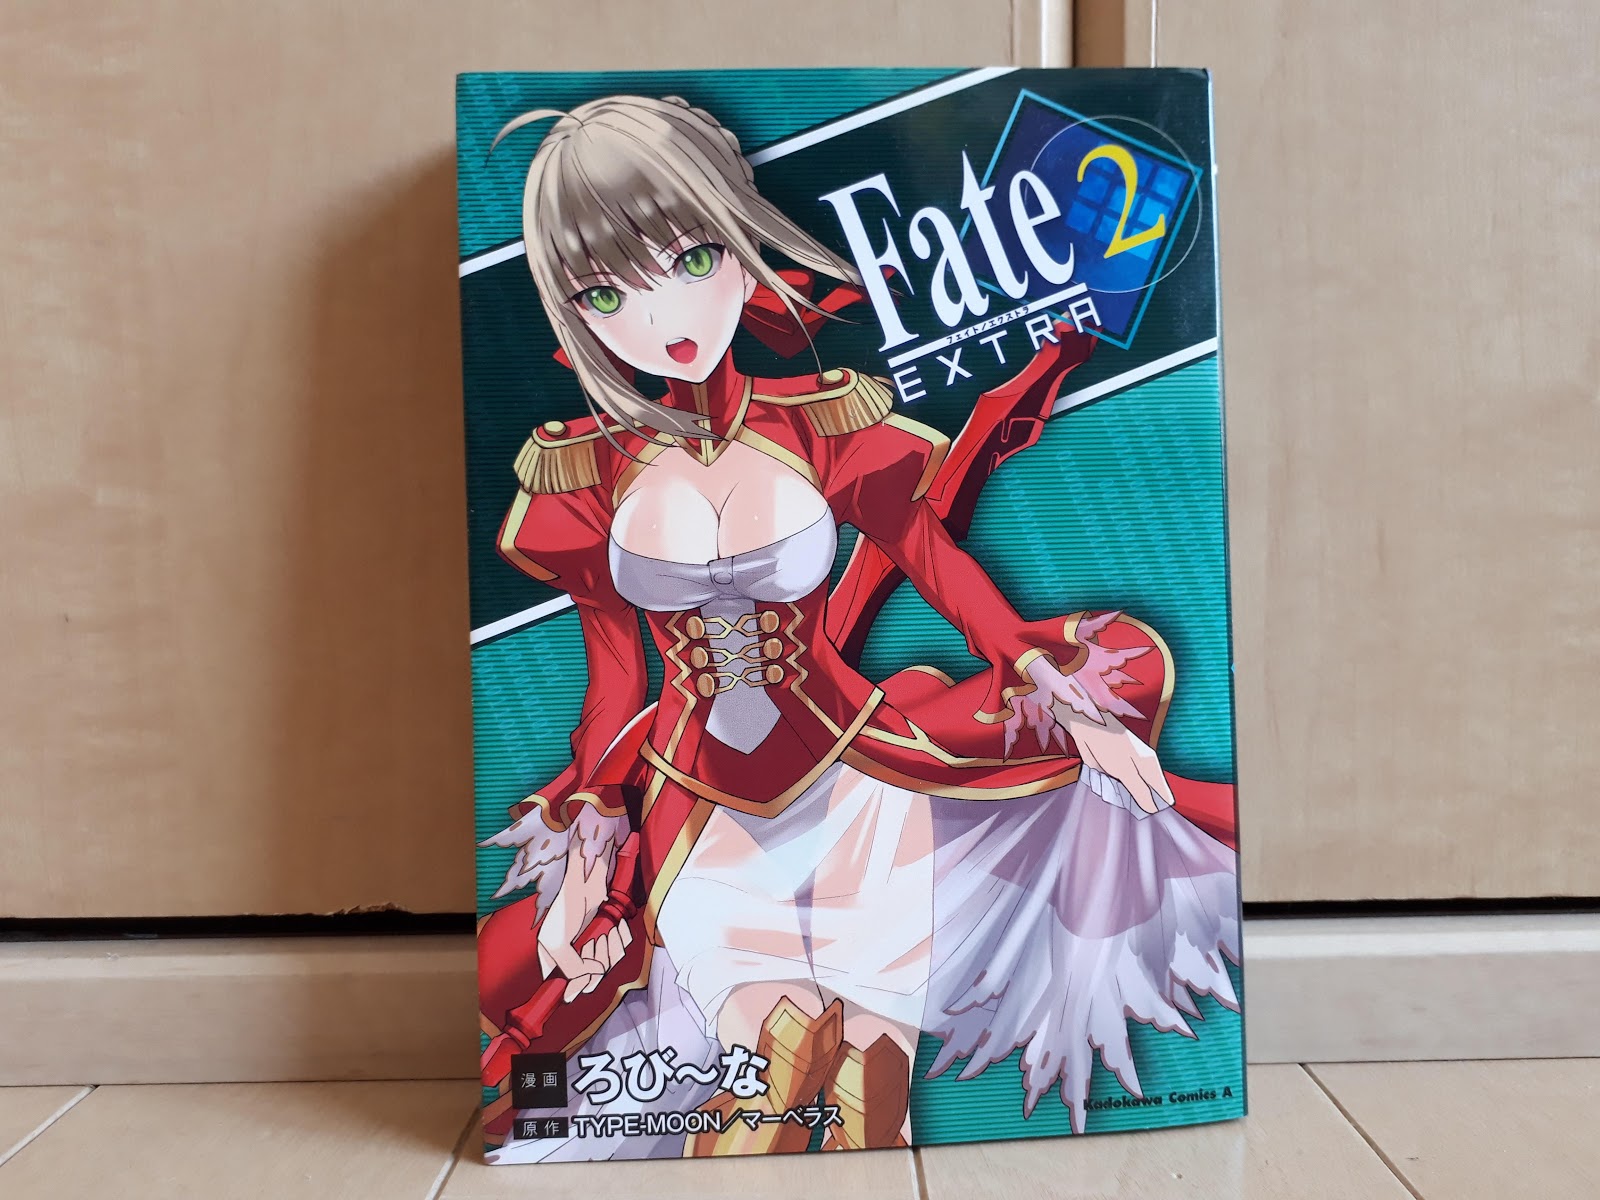 マンガネタバレ感想レビュー Fate Extra フェイト エクストラ 2巻 なま1428のポケモンgo Hobbyworld